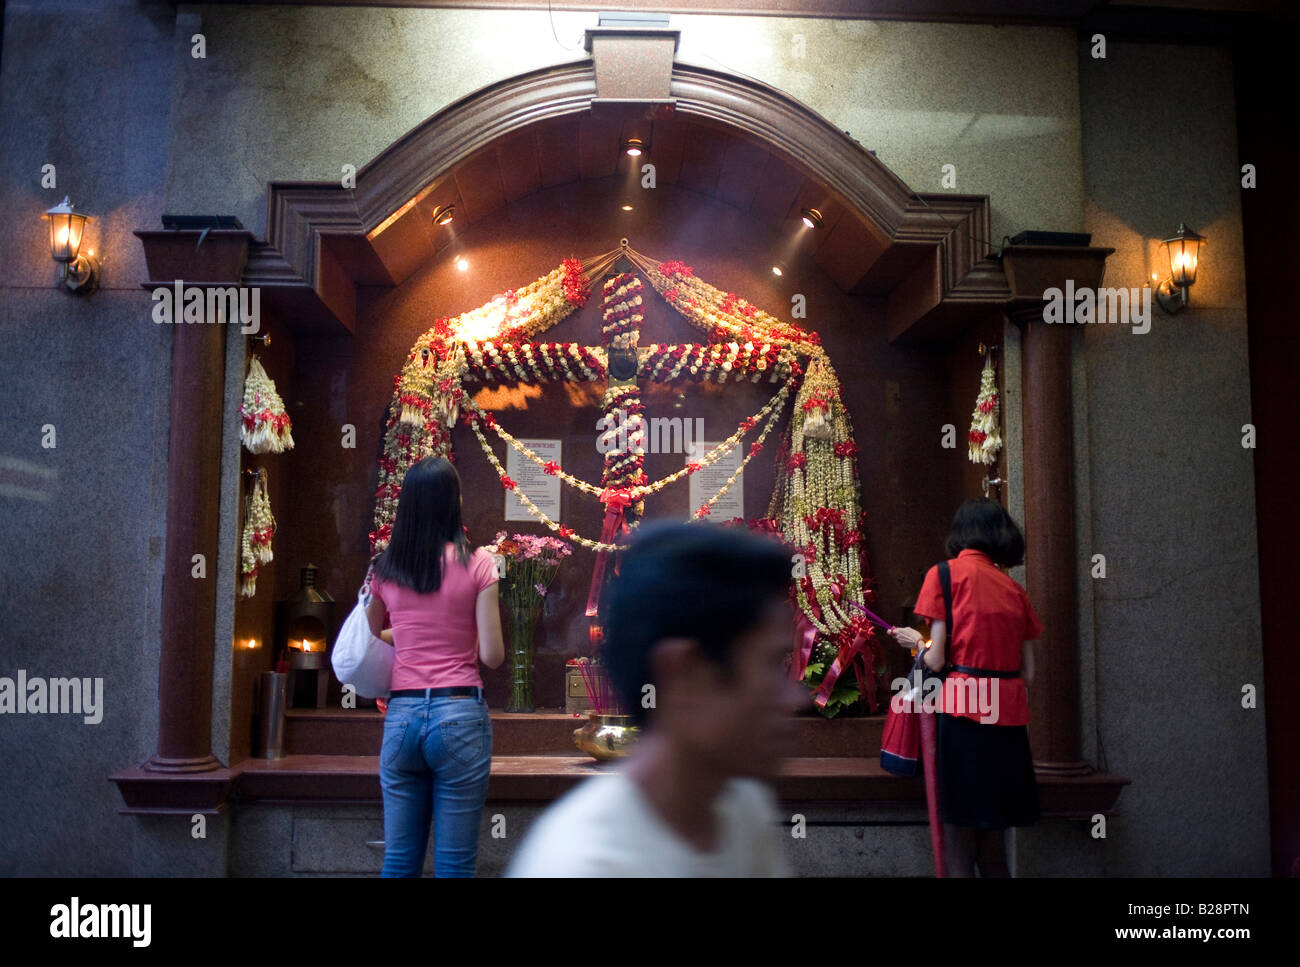 Les philippins s'arrêter en prière dans un lieu de culte catholique dans la Chine de la ville de Manille, aux Philippines. Banque D'Images